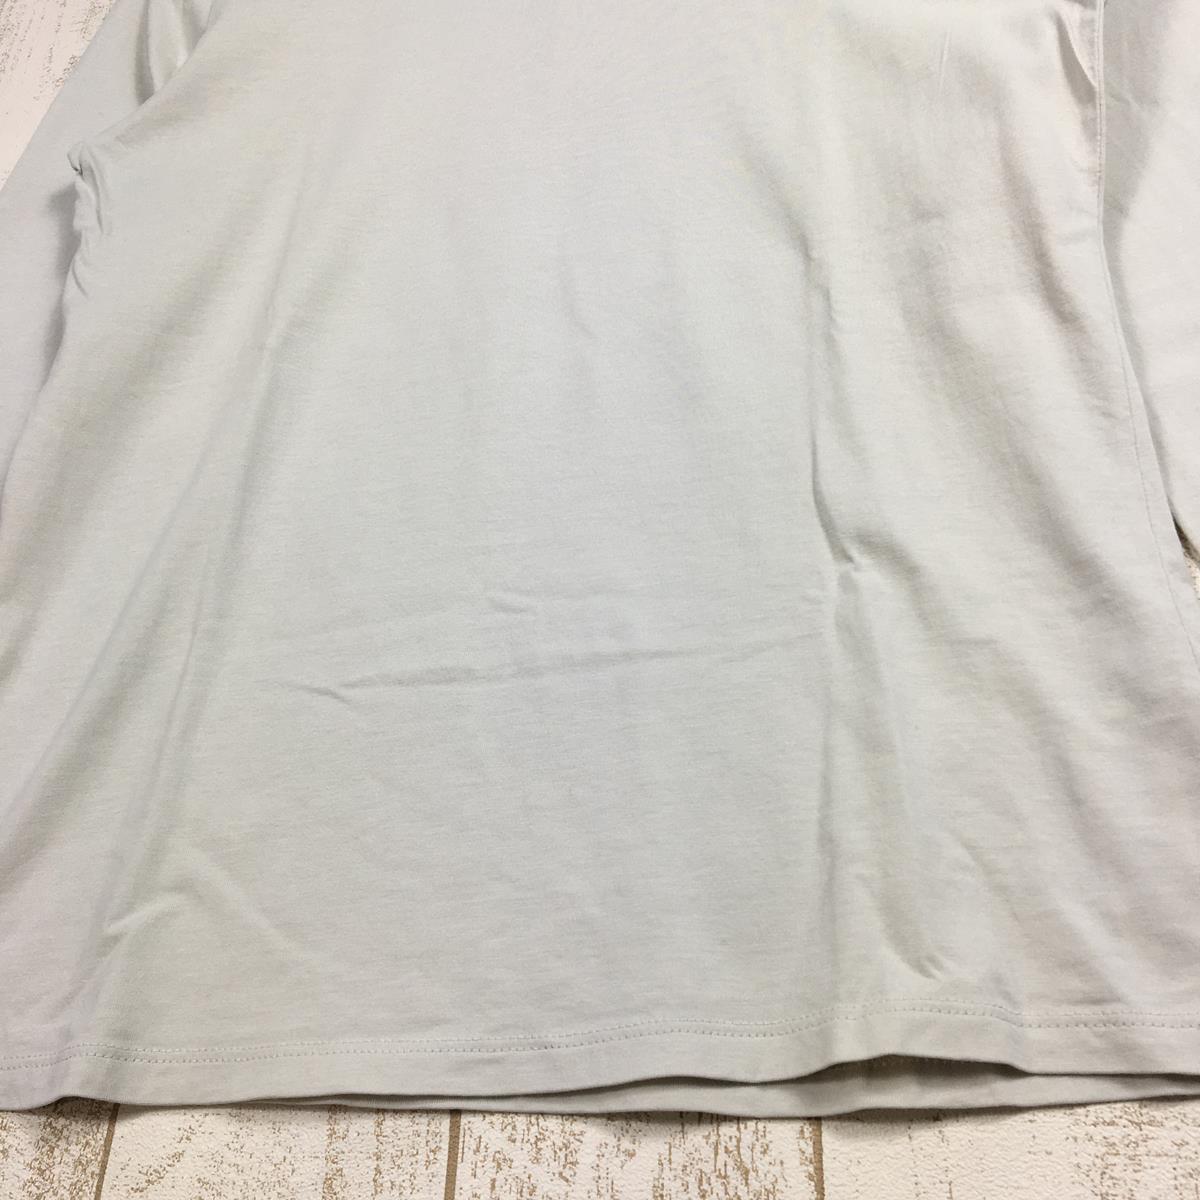 【WOMEN's XS】 パタゴニア ロングスリーブ リジェネラティブ オーガニック サーティファイド コットン ティー Long-Sleeved Regenerative Organic Certified Cotton Tee Tシャツ ロンT PATAGONIA 42175 DYWH ベージュ系